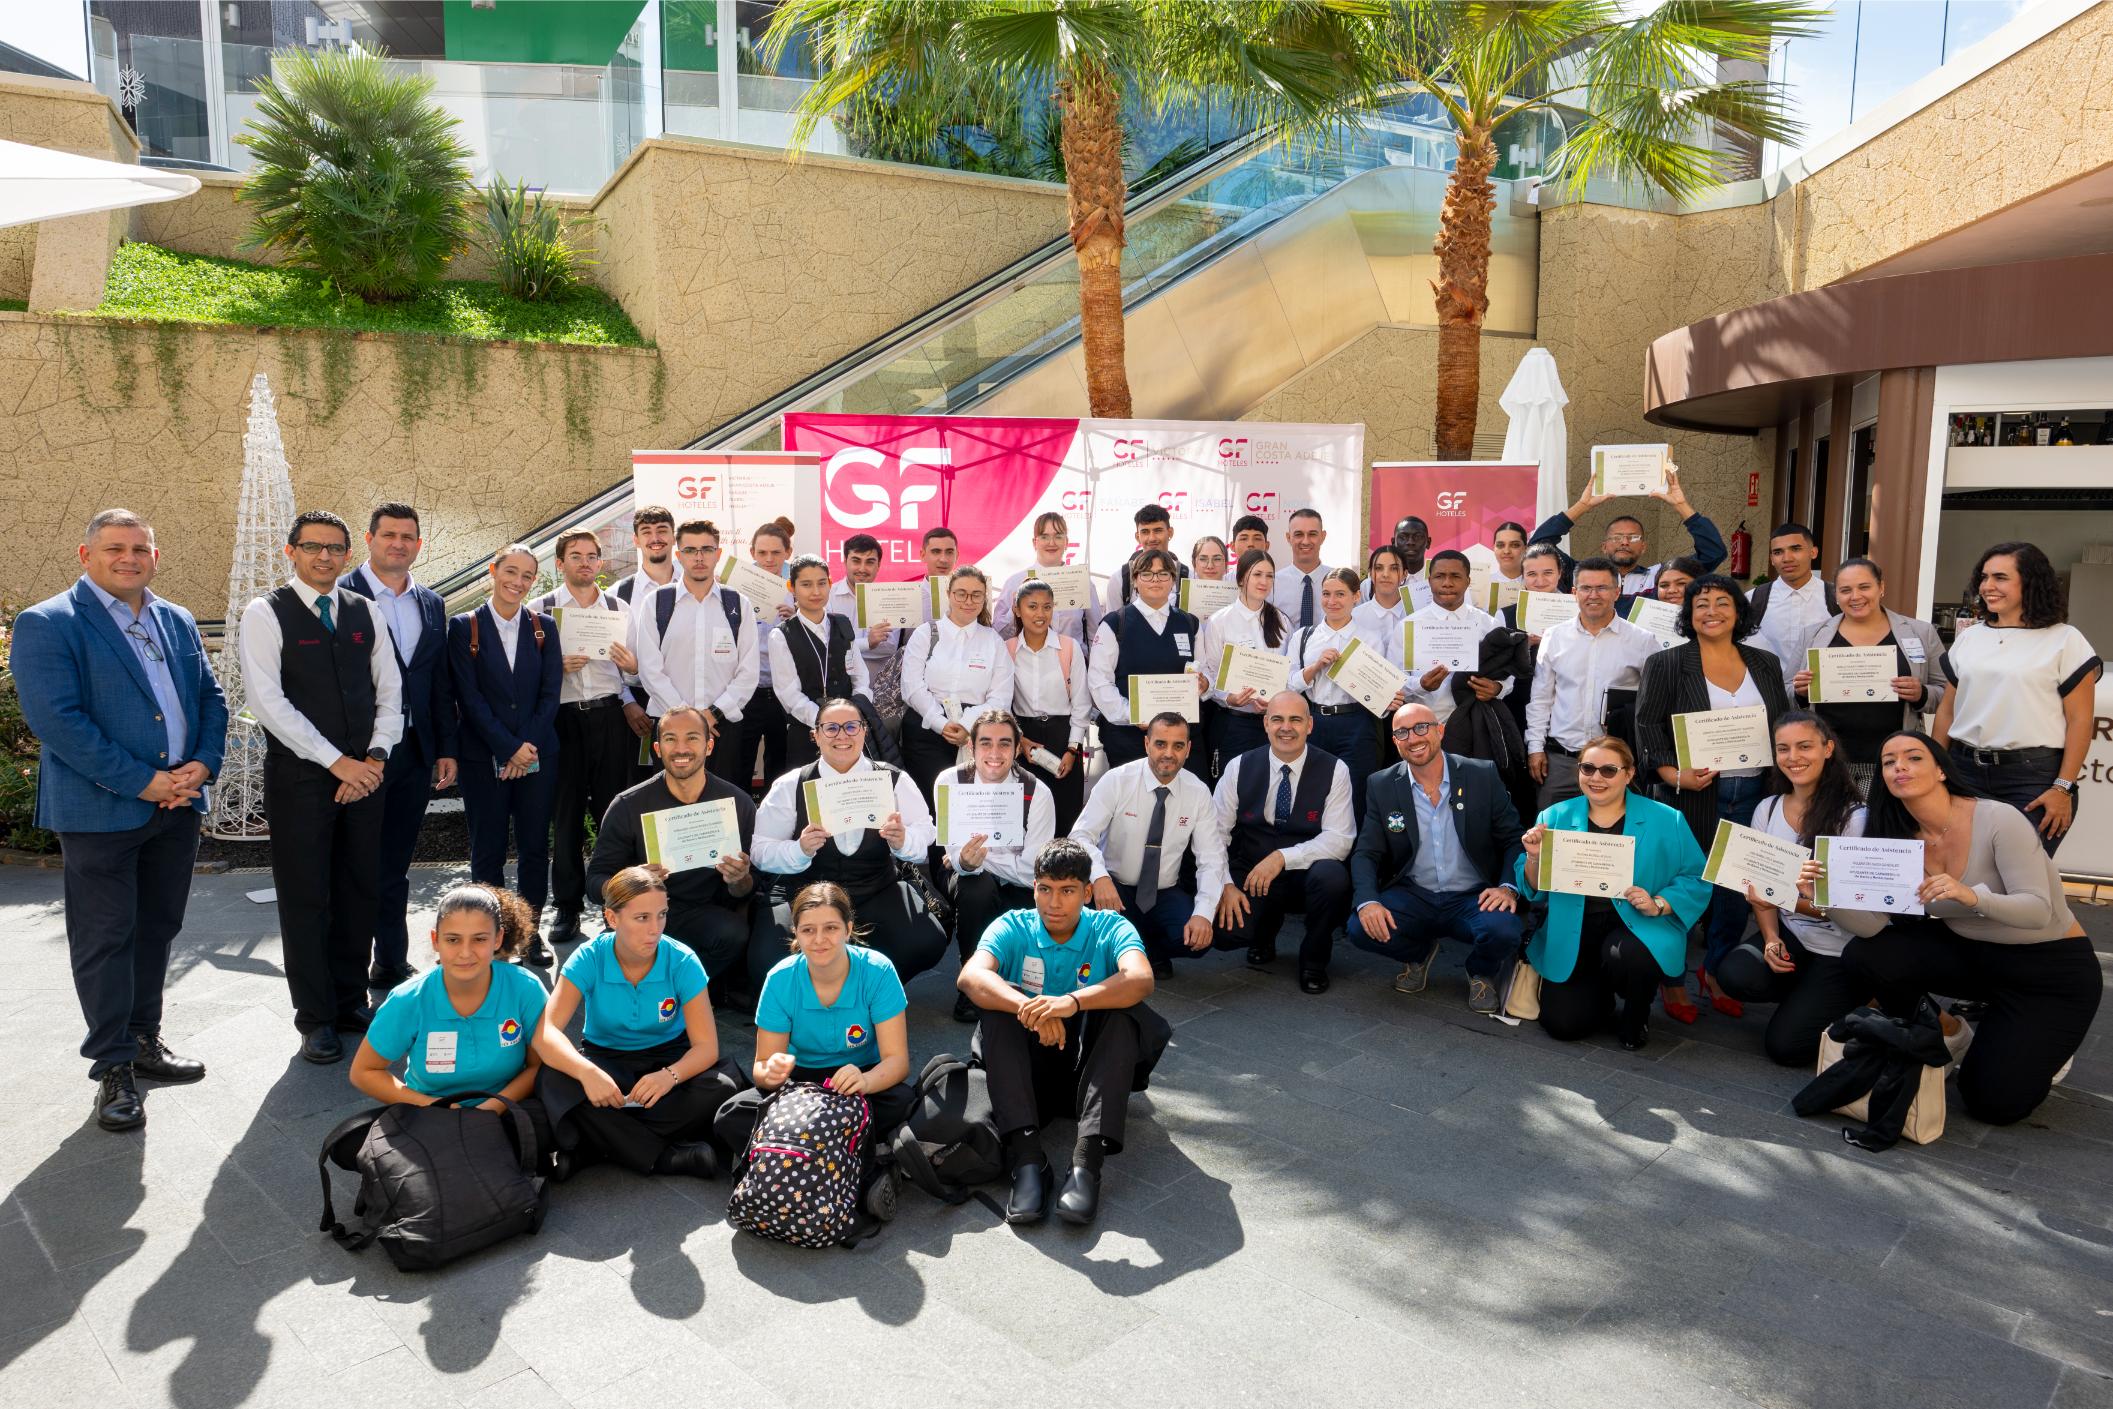 GF Hoteles jornada de puertas abiertas de empleo, Open Employment Day